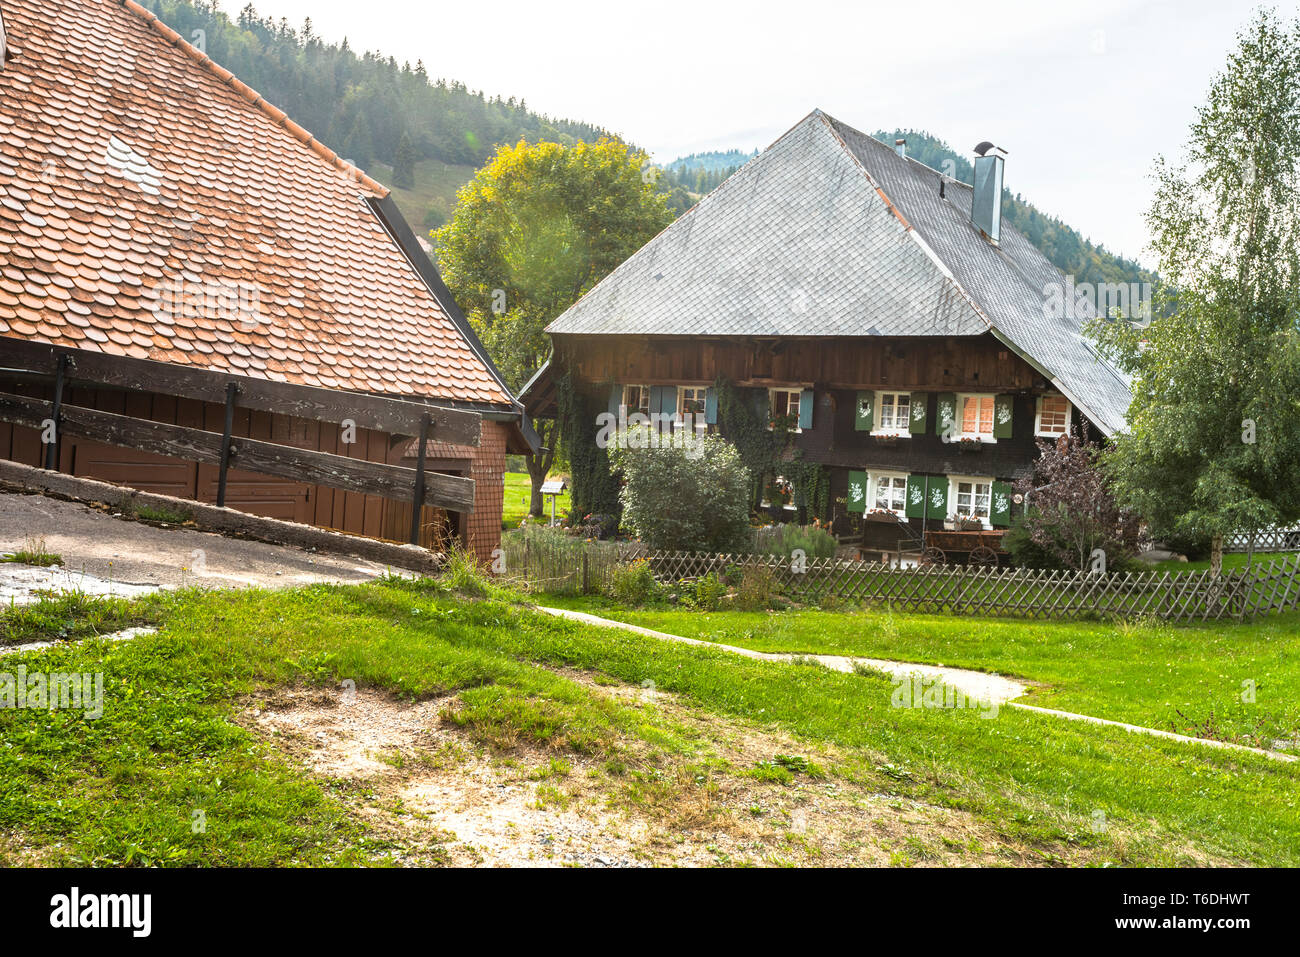 Tipica casa nella Foresta Nera con tetto hipped e paesaggio, villaggio Menzenschwand, Germania, architettura tradizionale dell'Alta Foresta Nera Foto Stock